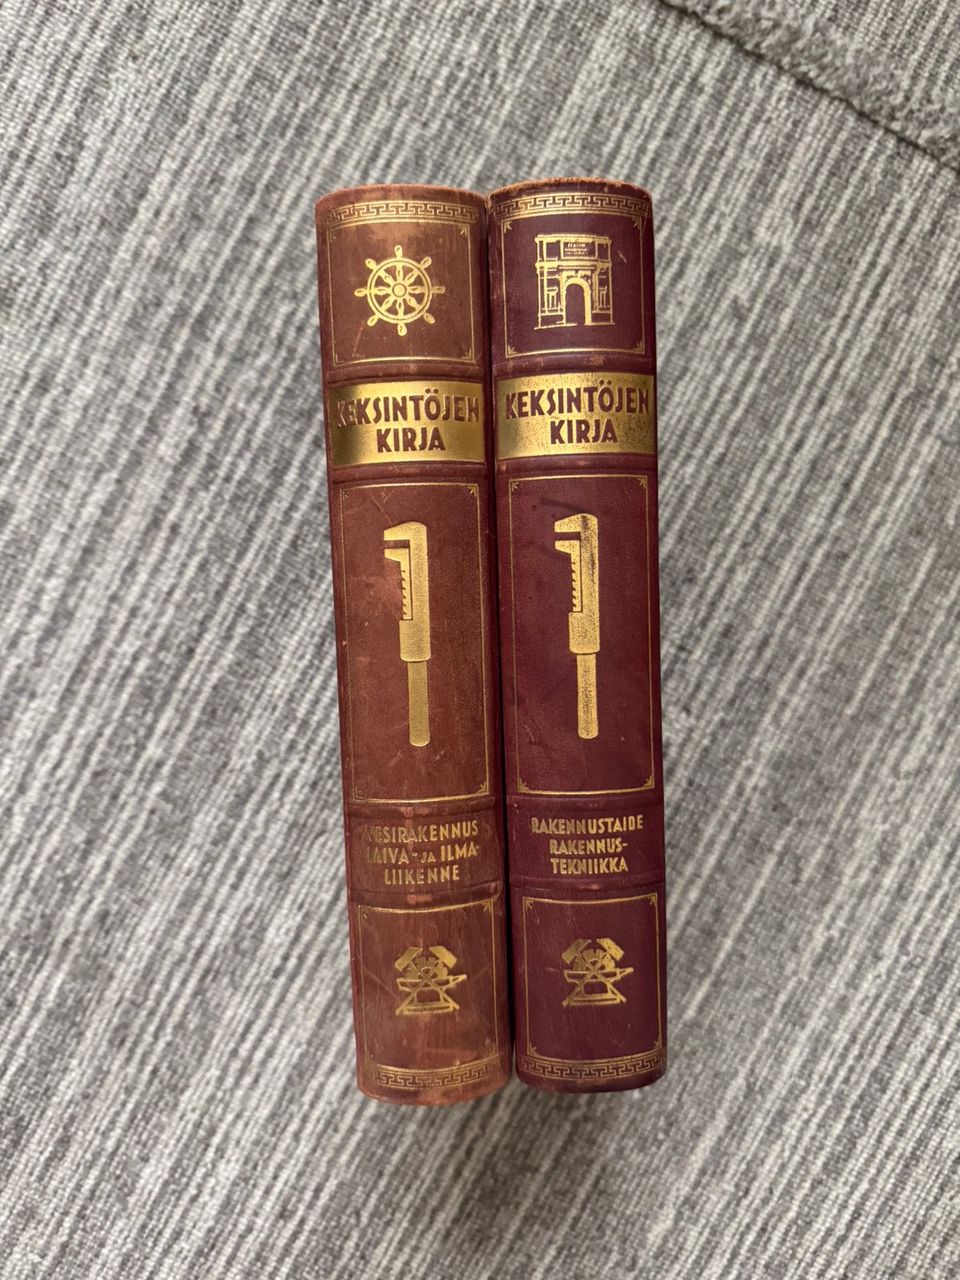 2 kpl Keksintöjen kirja (painettu 1937-1938) yhteishintaan